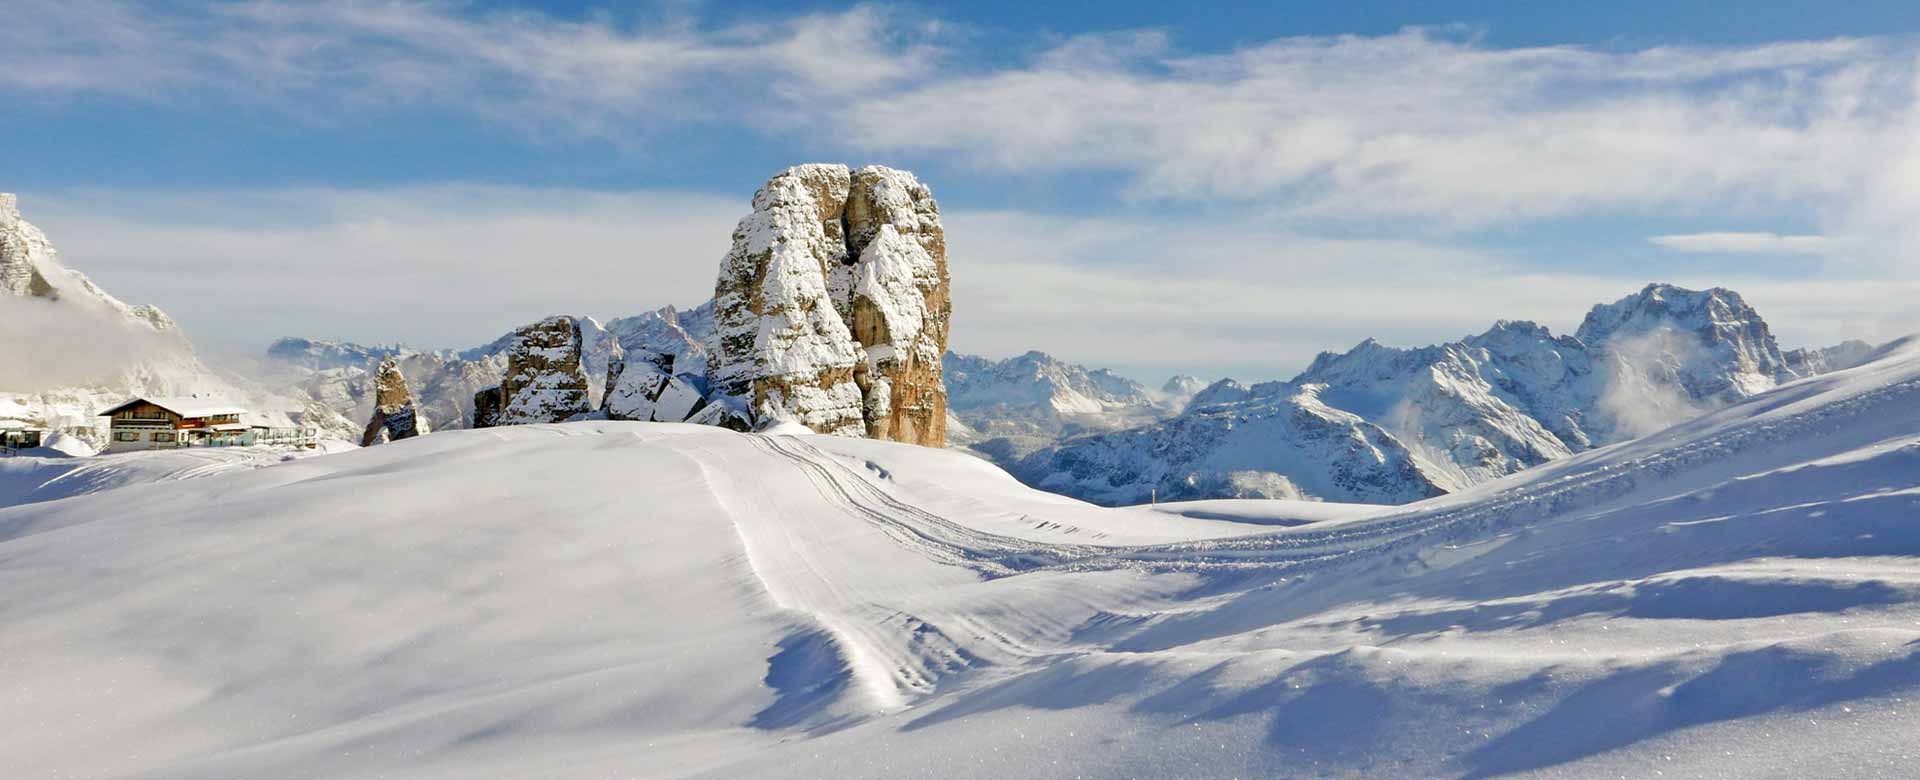 Il complesso montuoso delle Cinque Torri, Cortina d’Ampezzo (BL)